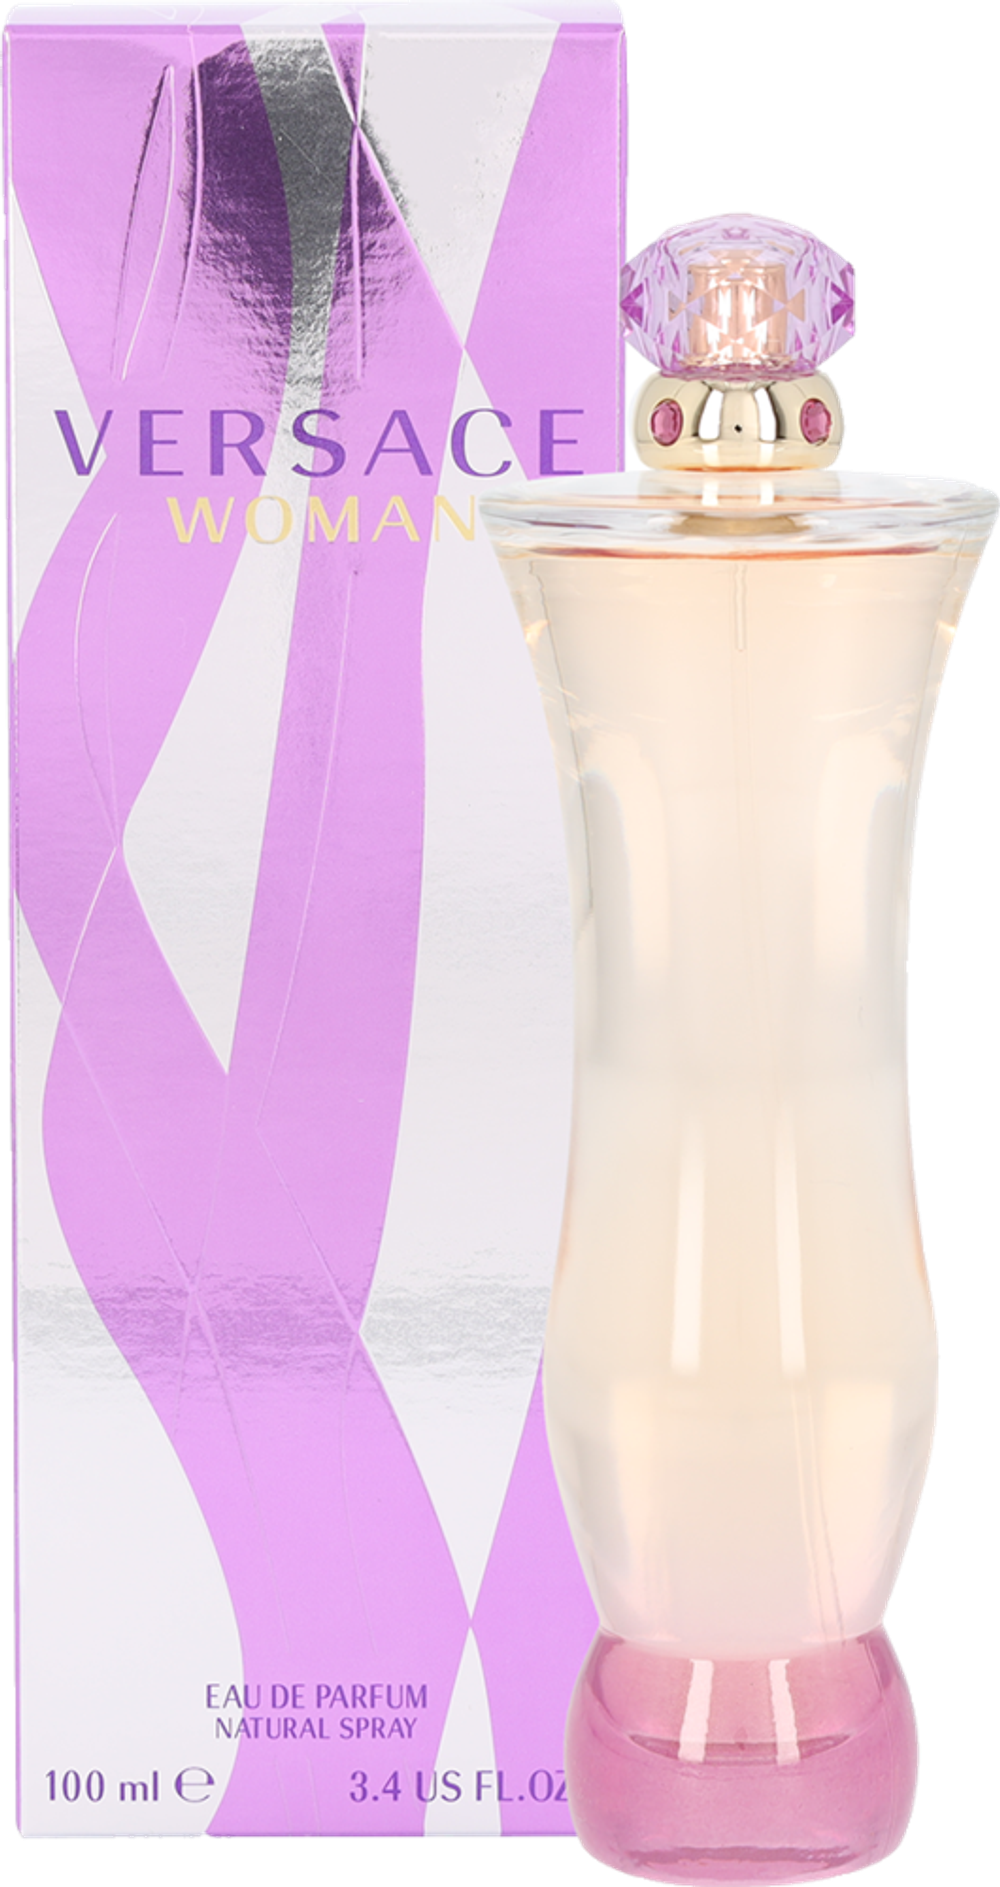 Tilbud på Versace Woman Edp Spray fra Fleggaard til 269 kr.